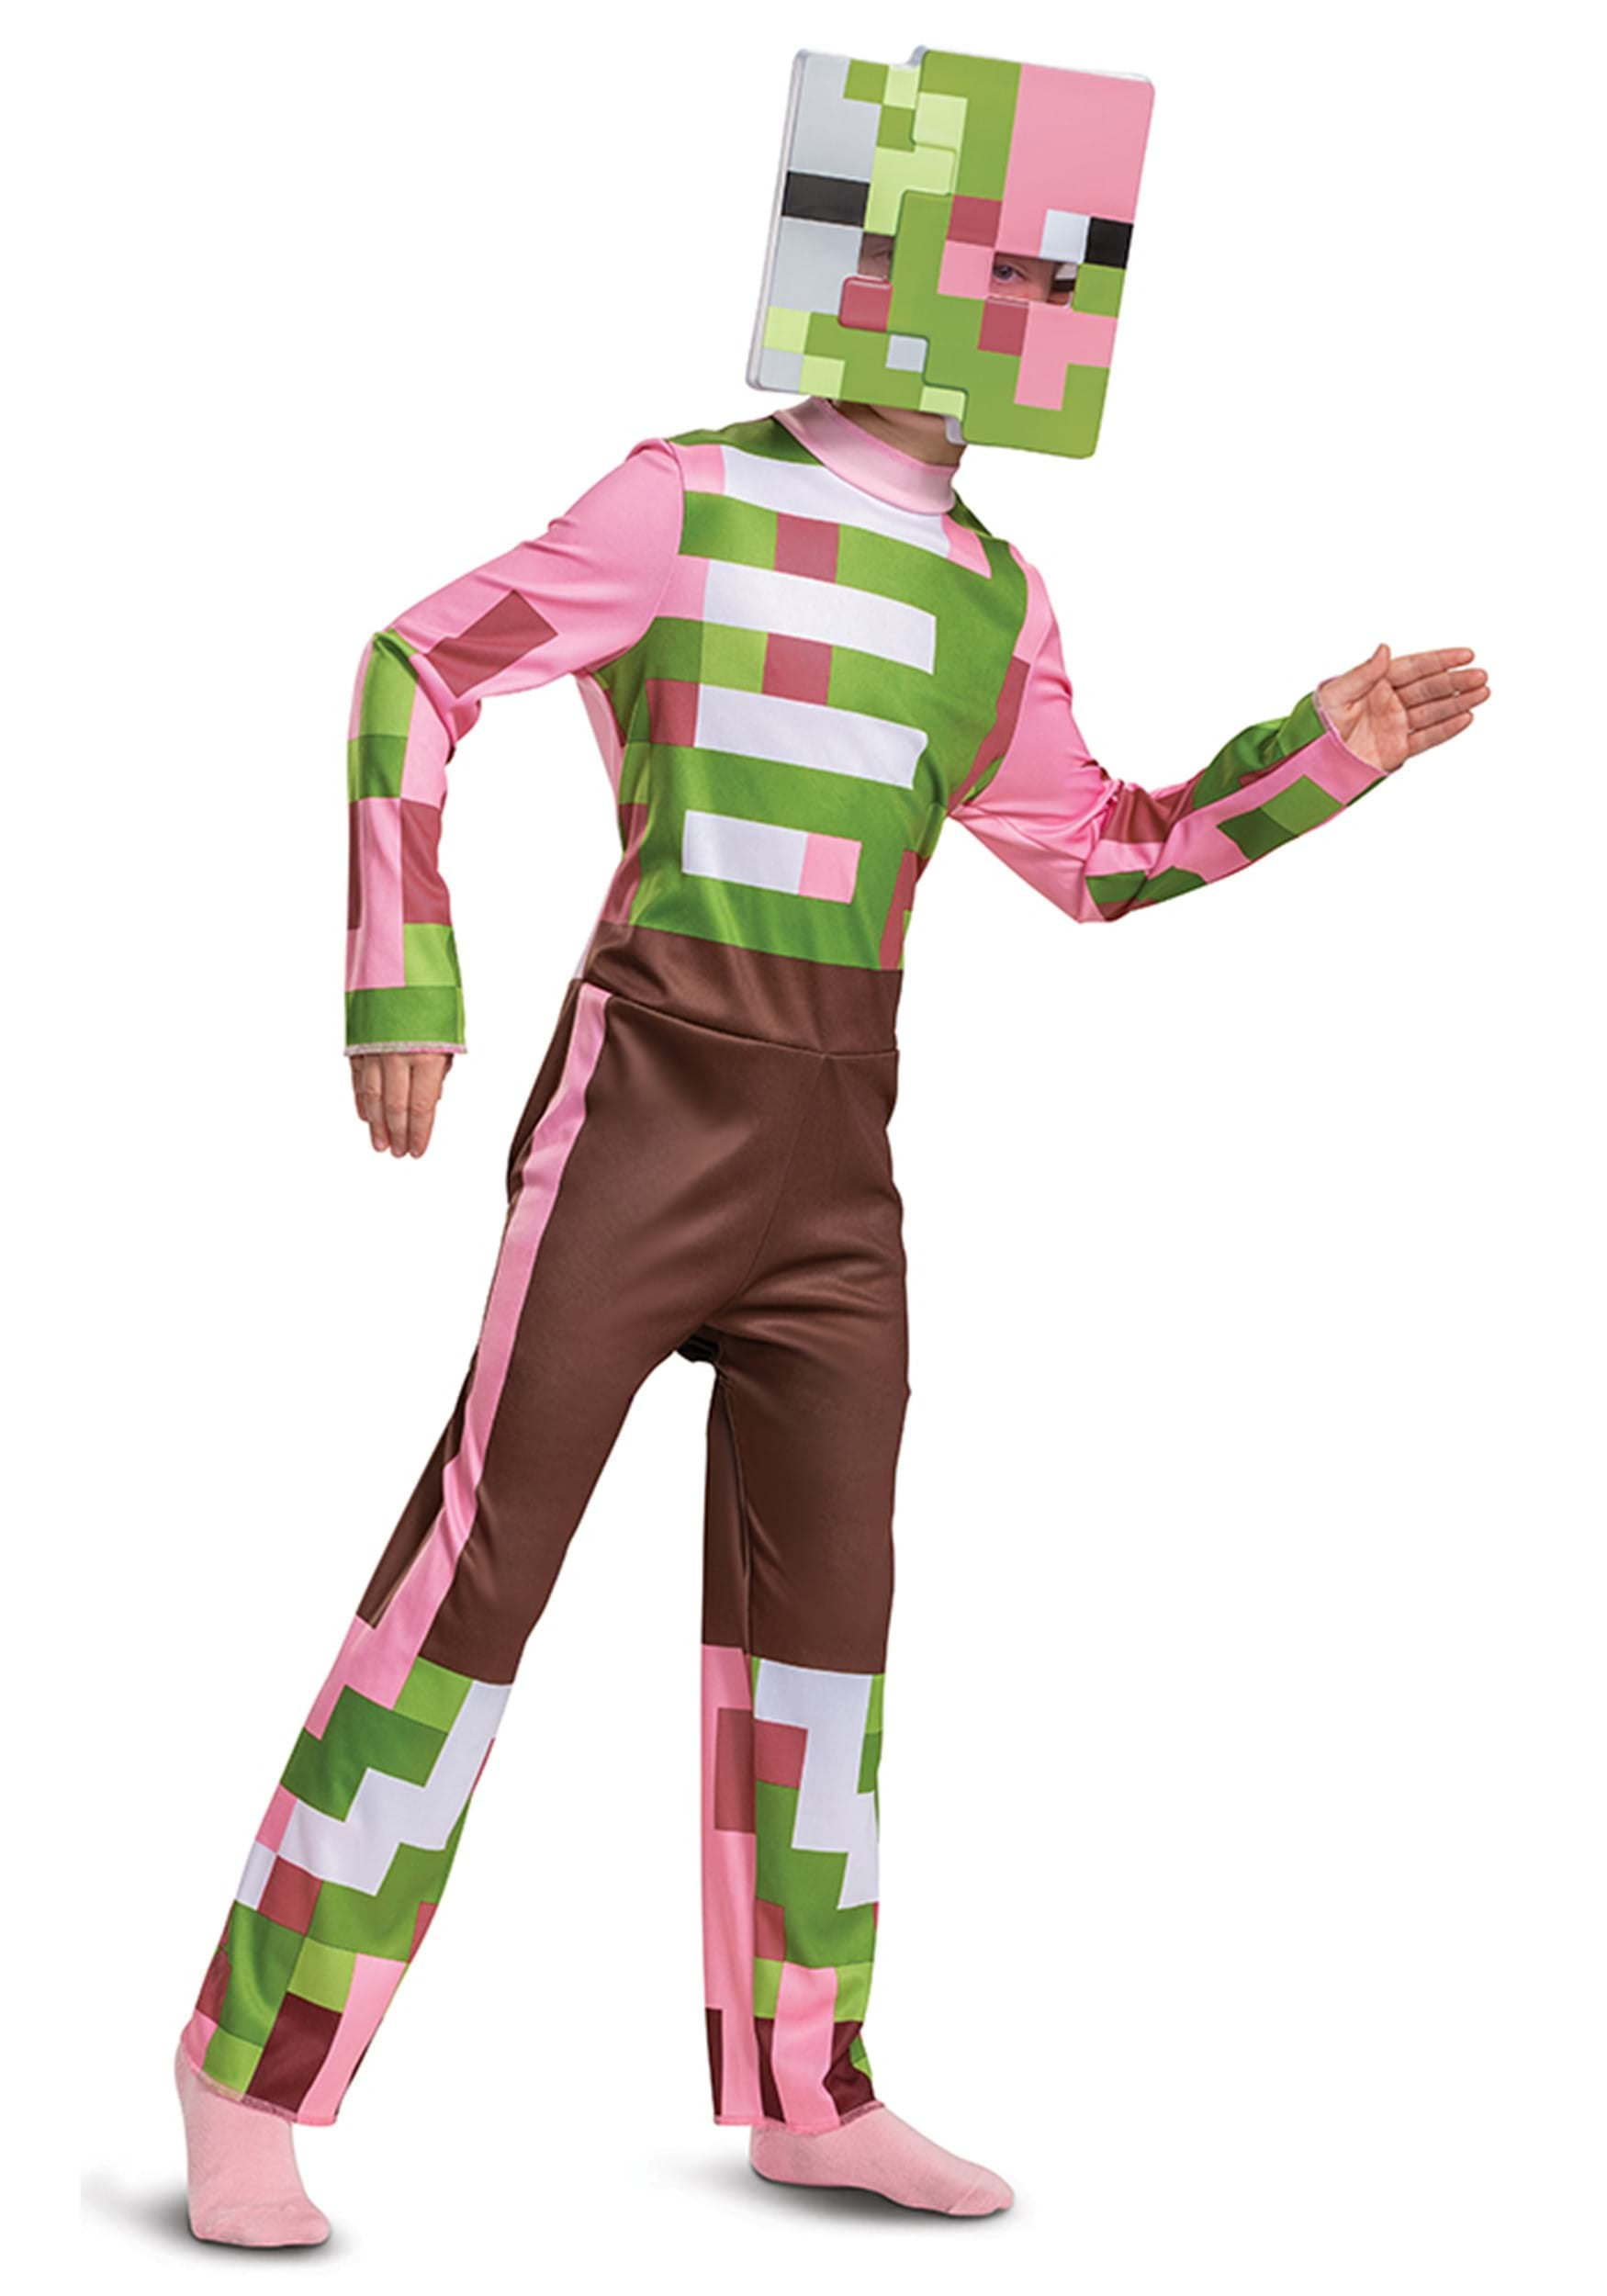  Creeper Classic Minecraft Costume, Green, Small (4-6